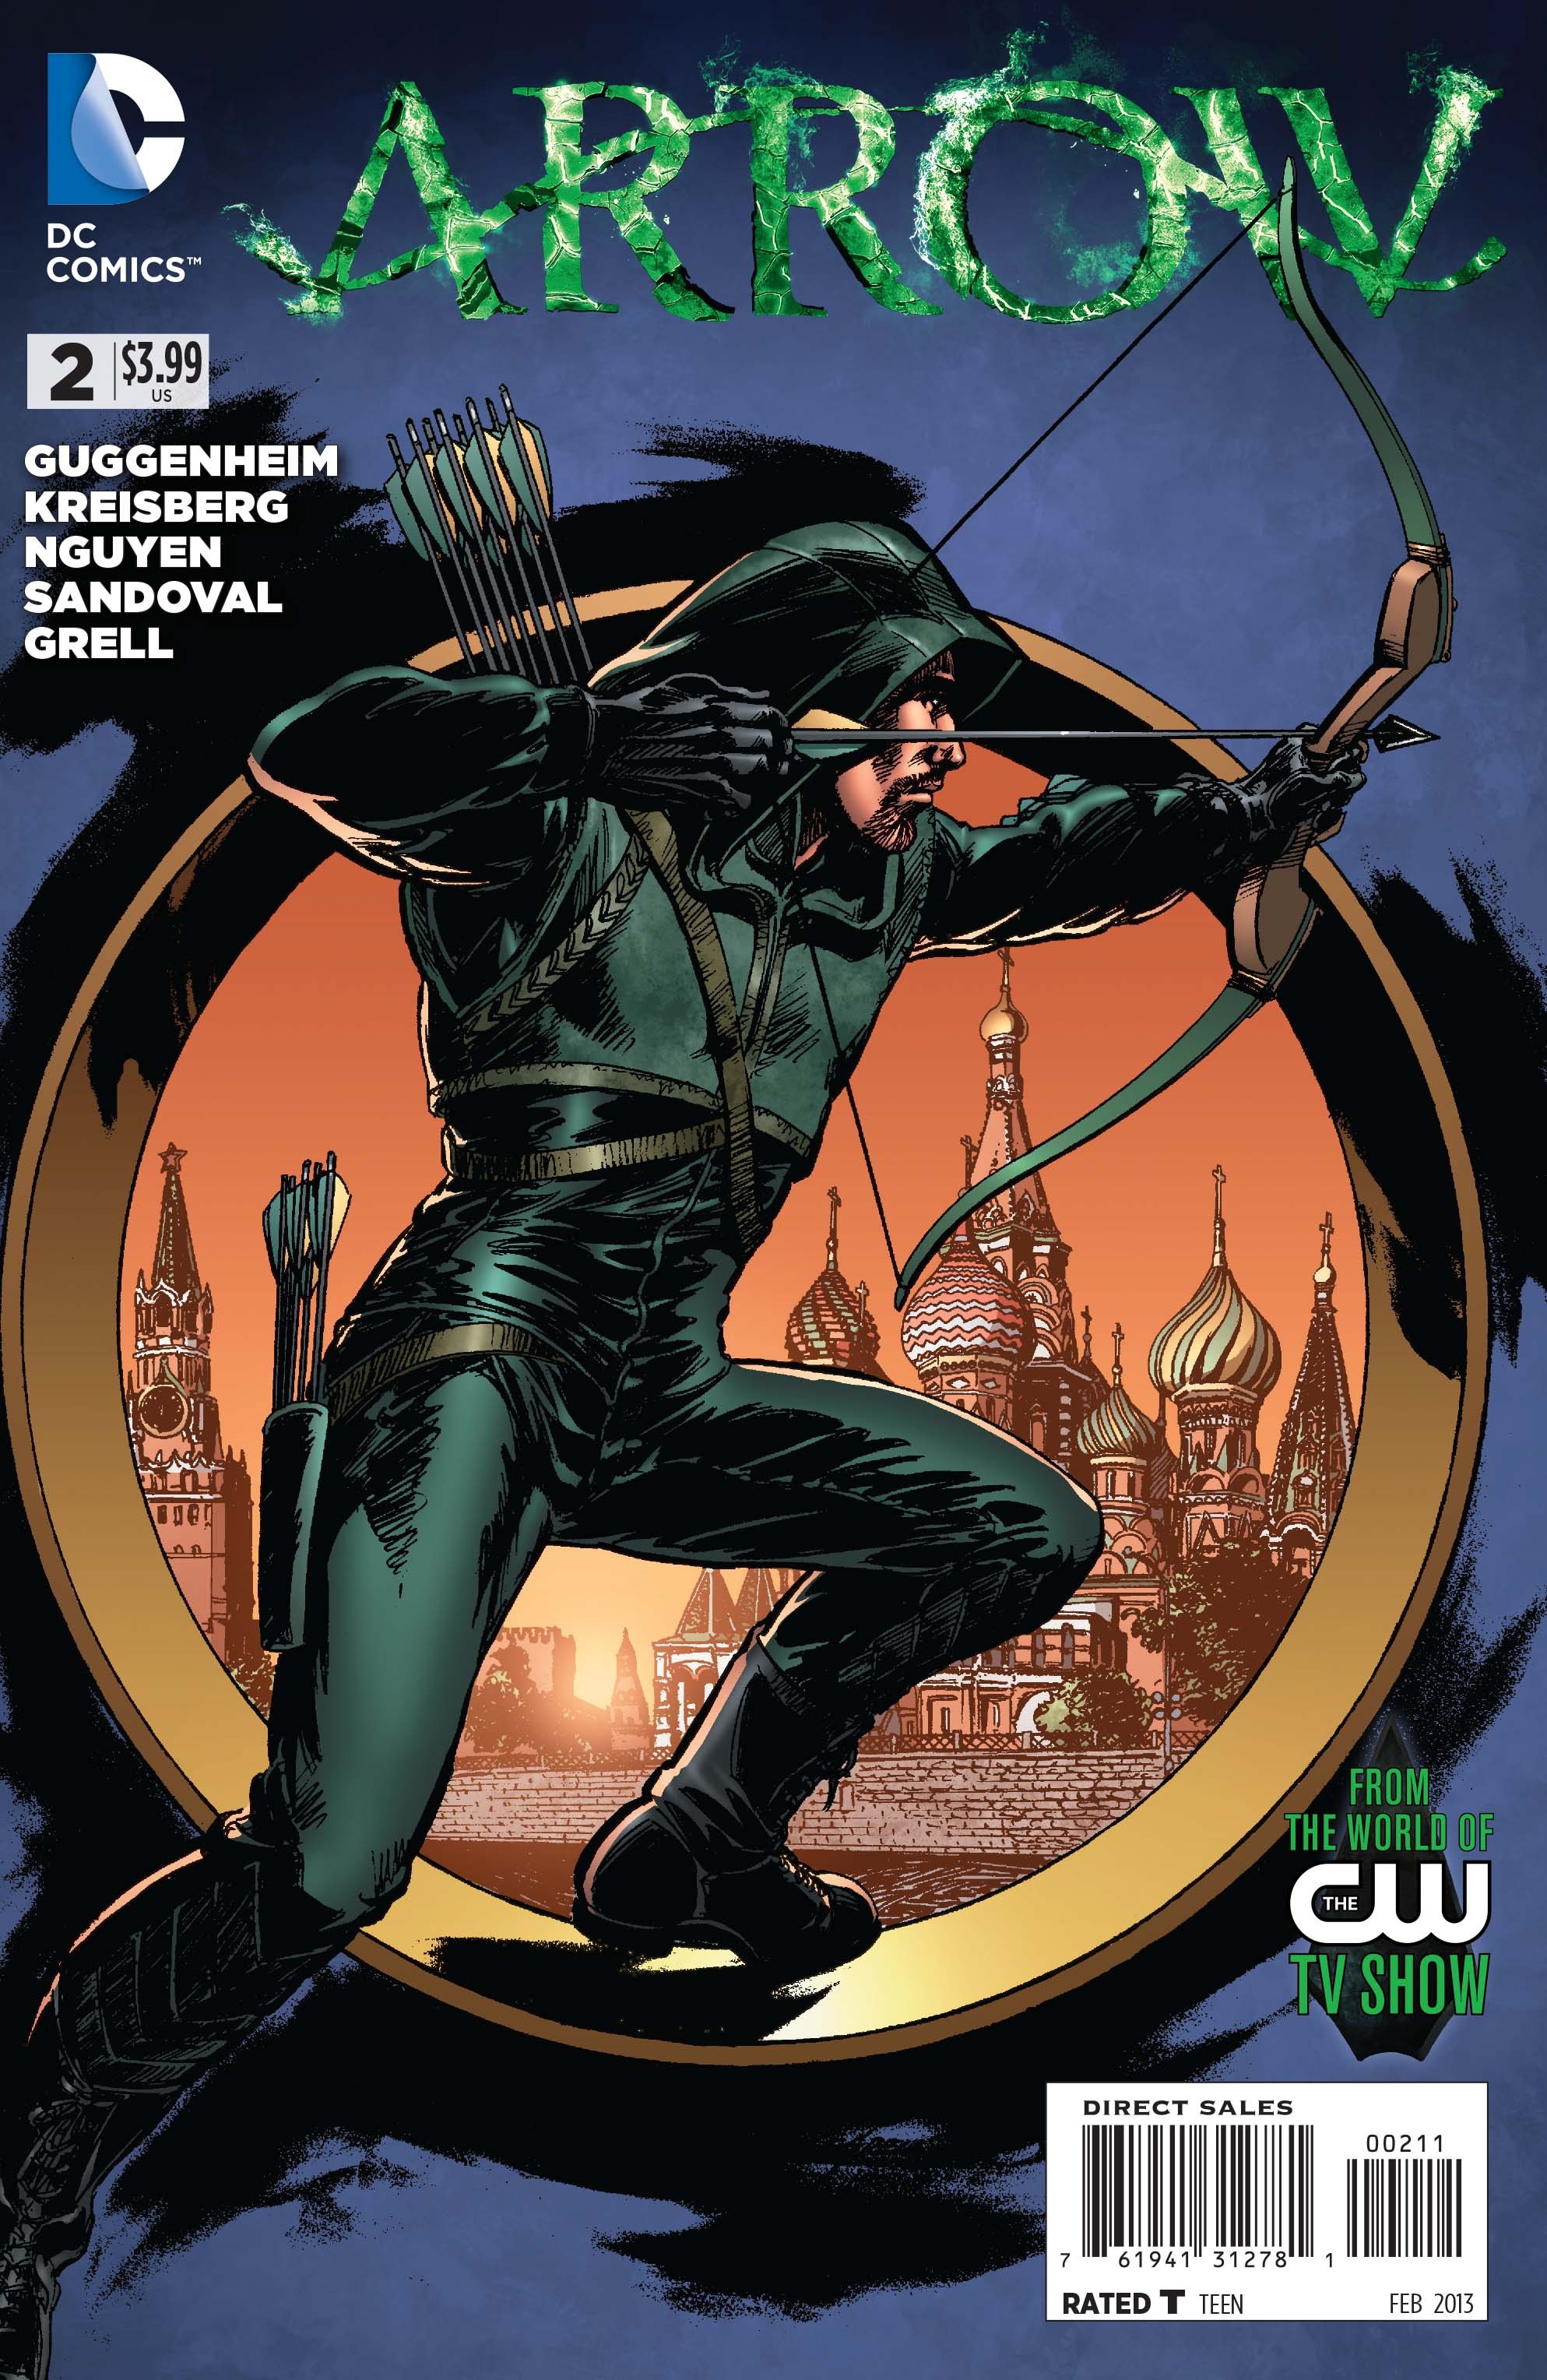 Arrow Vol. 1 #2